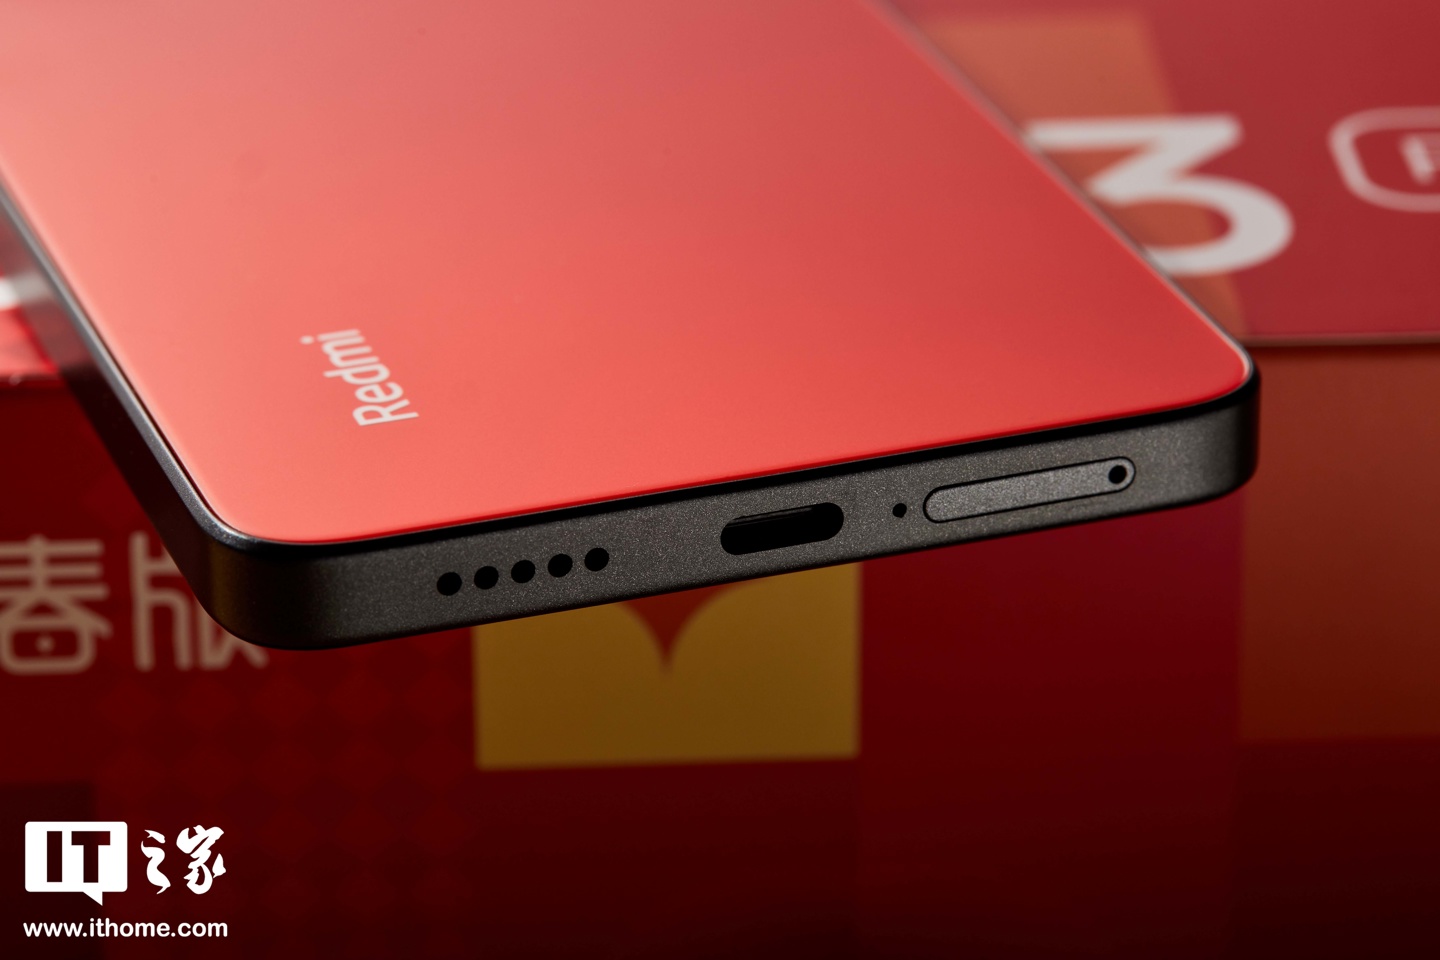 Redmi Note 13 Pro 新春版图赏：好运红，迎龙年红运